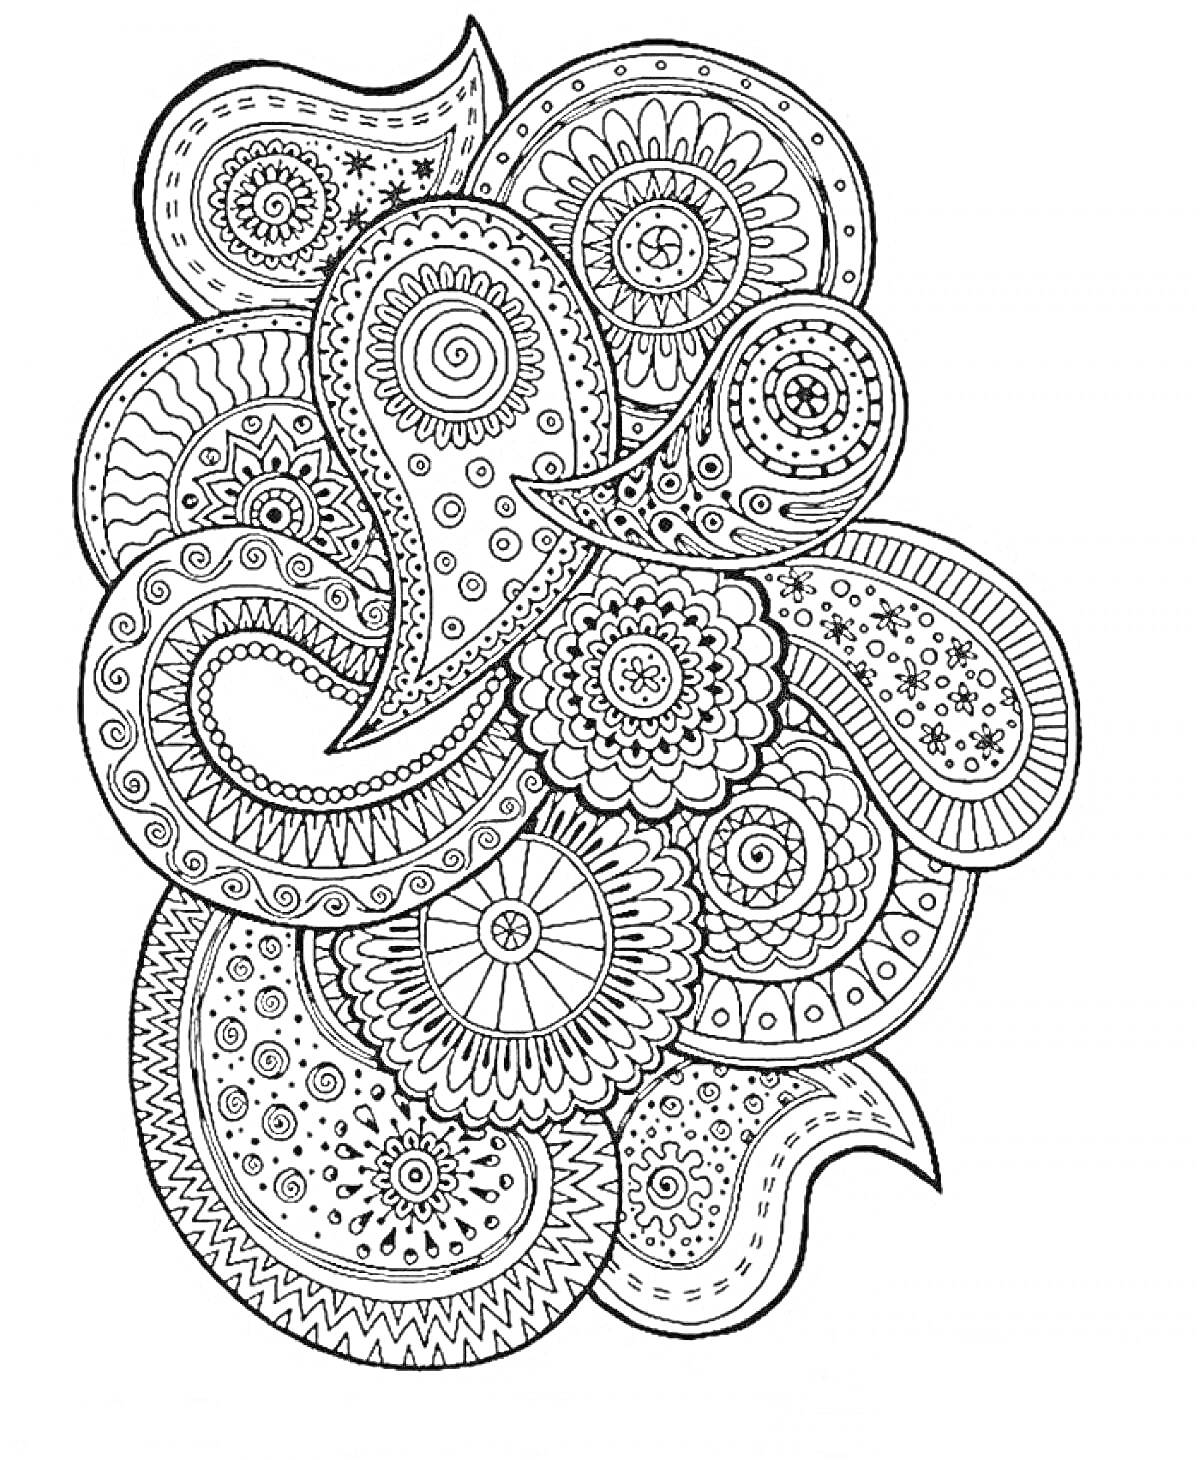 Антистресс раскраска с изображением узоров пейсли, мандал и круговых орнаментов